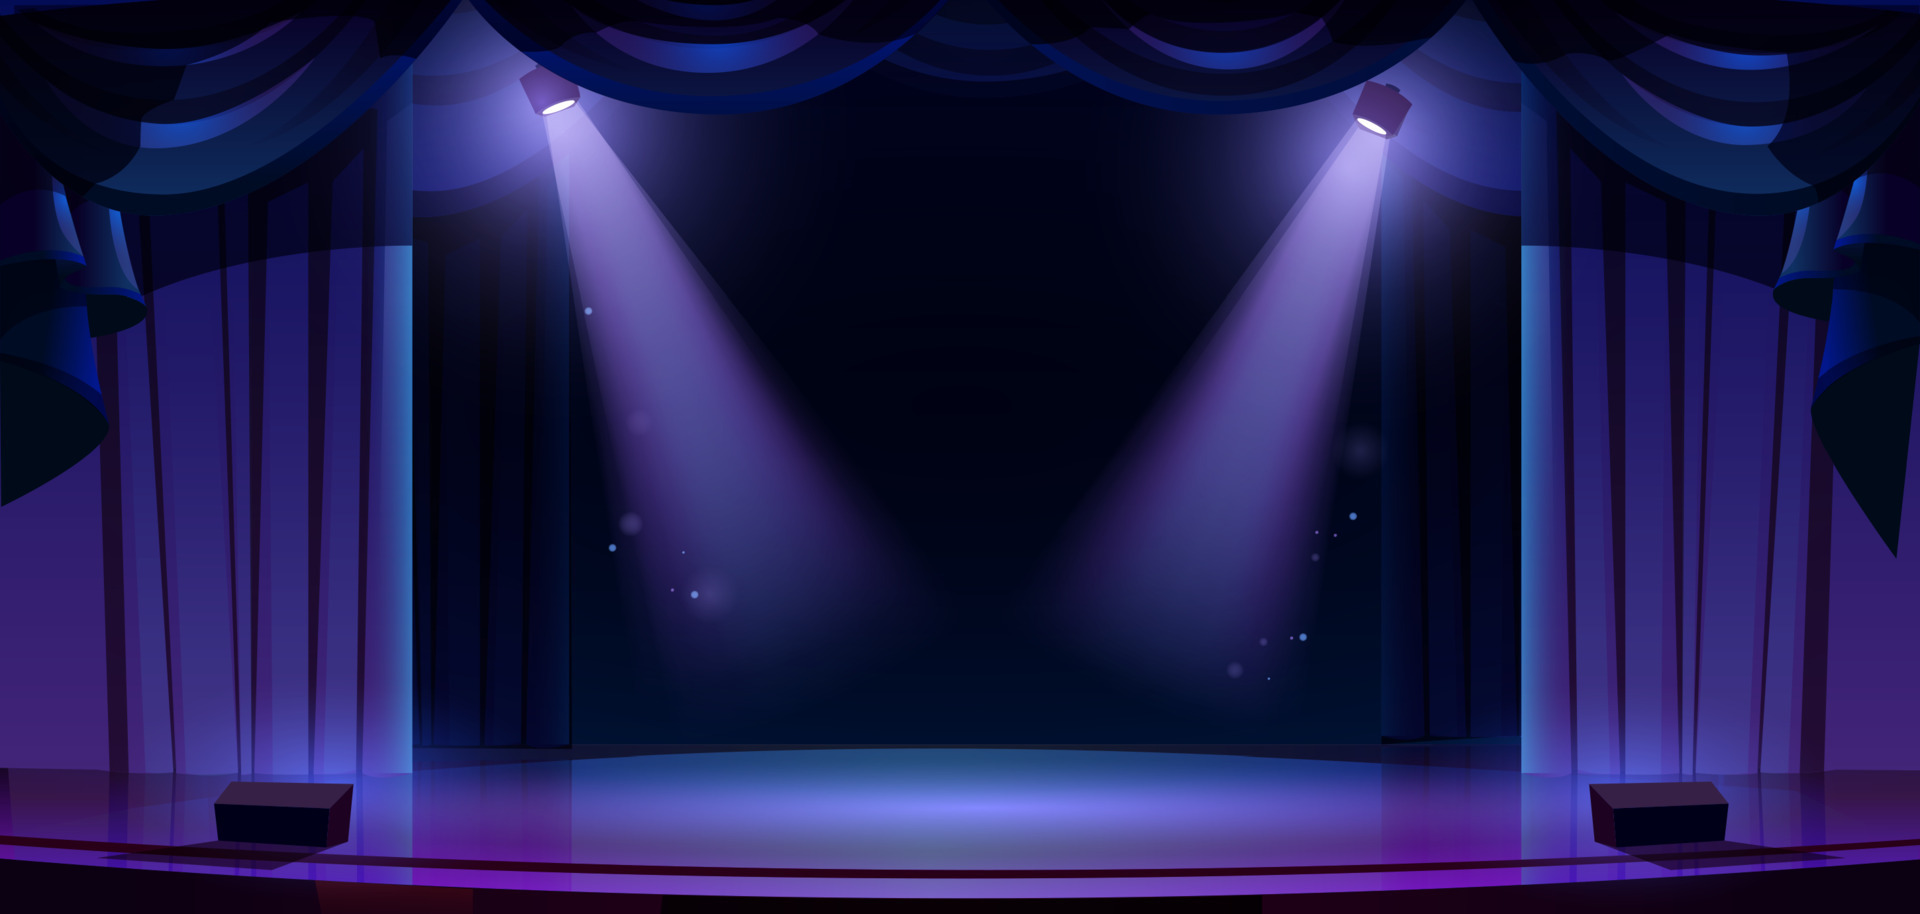 Bạn là một người đam mê sân khấu và công nghệ, muốn tìm kiếm hình ảnh về sân khấu rực sáng, rèm, kịch với một không gian huyền ảo ánh sáng đưa ta như mơ? Hãy xem ngay hình ảnh liên quan và chiêm ngưỡng vẻ đẹp lộng lẫy, ánh sáng huyền ảo, lấp lánh của sân khấu kịch